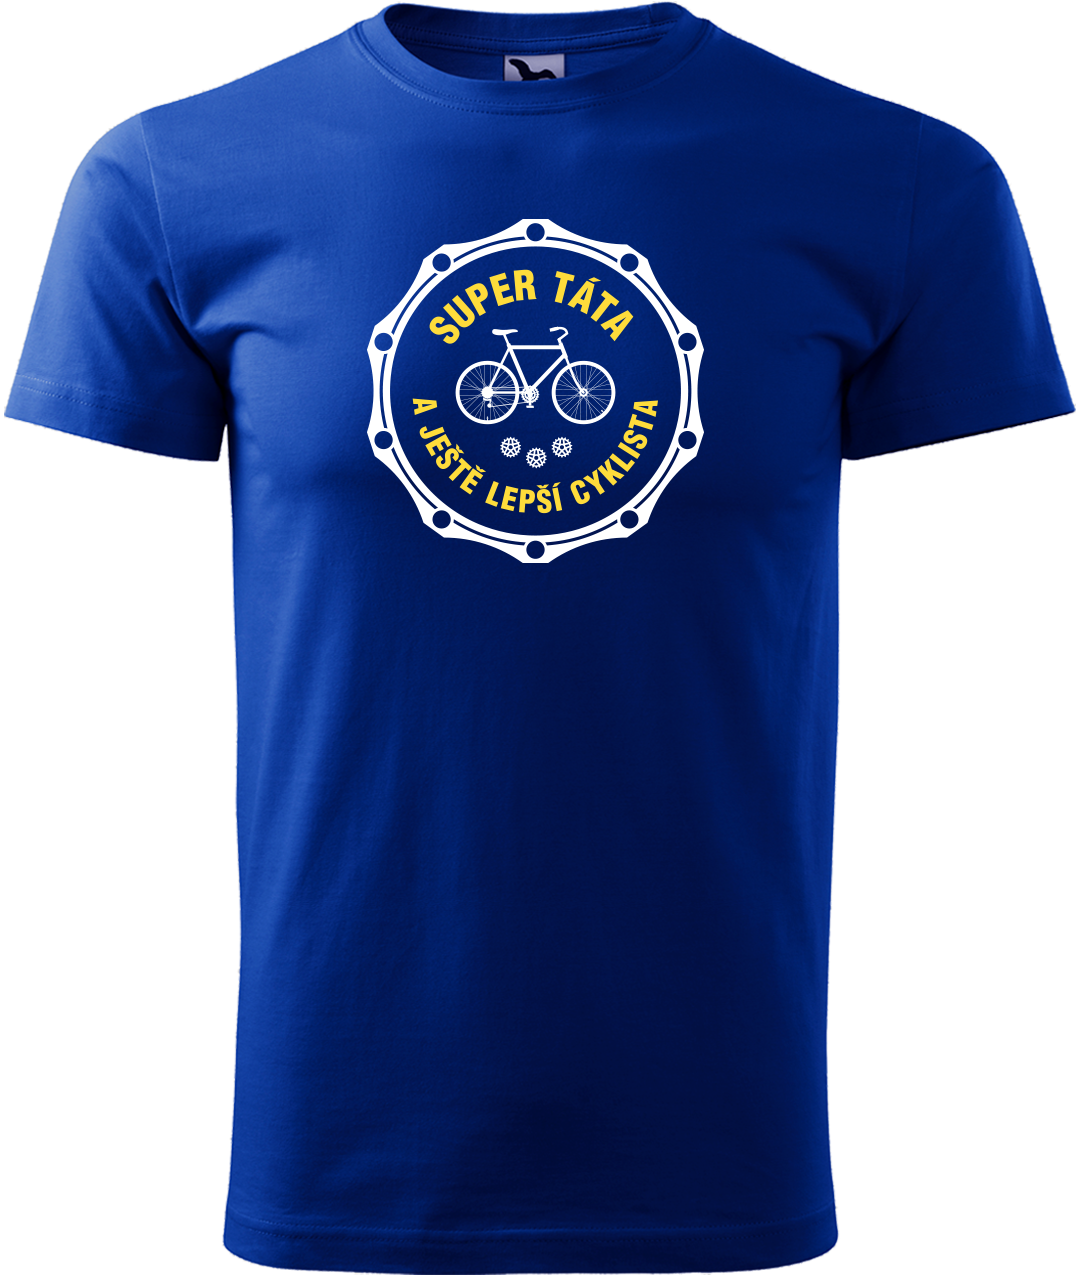 Pánské tričko pro cyklistu - Super táta a ještě lepší cyklista Velikost: L, Barva: Královská modrá (05)